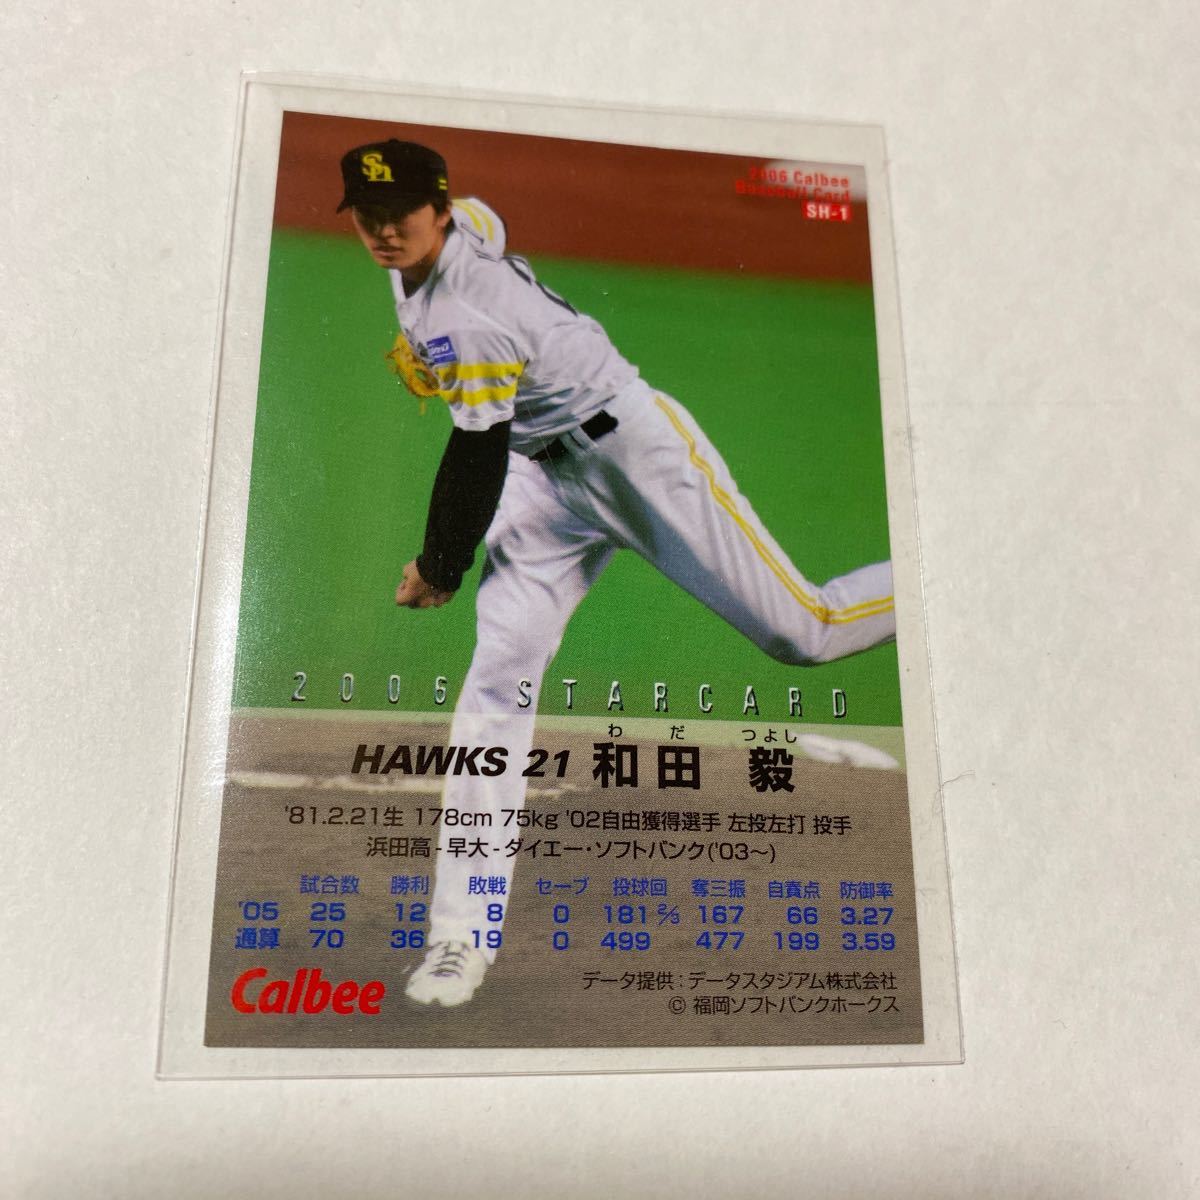 和田毅 11 カルビープロ野球チップス トッププレイヤー サインパラレル ソフトバンクホークス